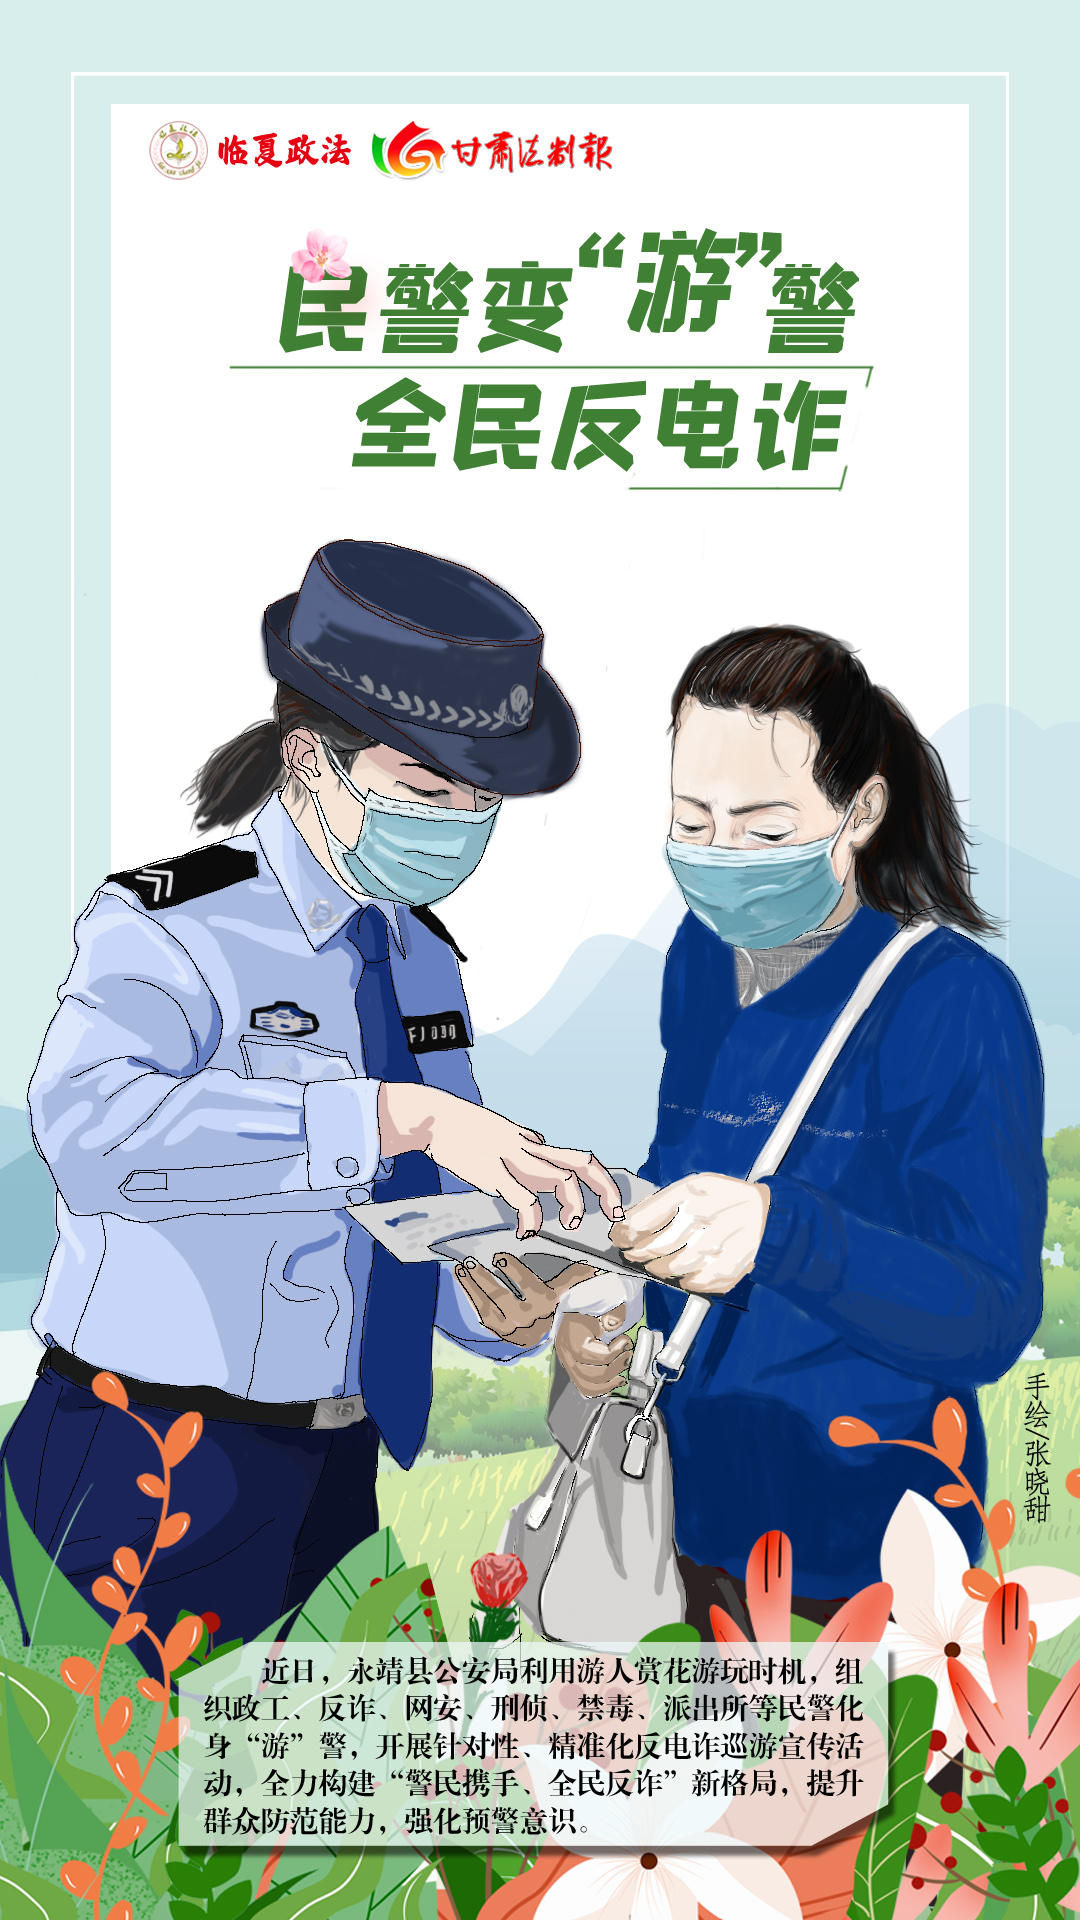 微海报 ▏民警变“游”警 全民反电诈